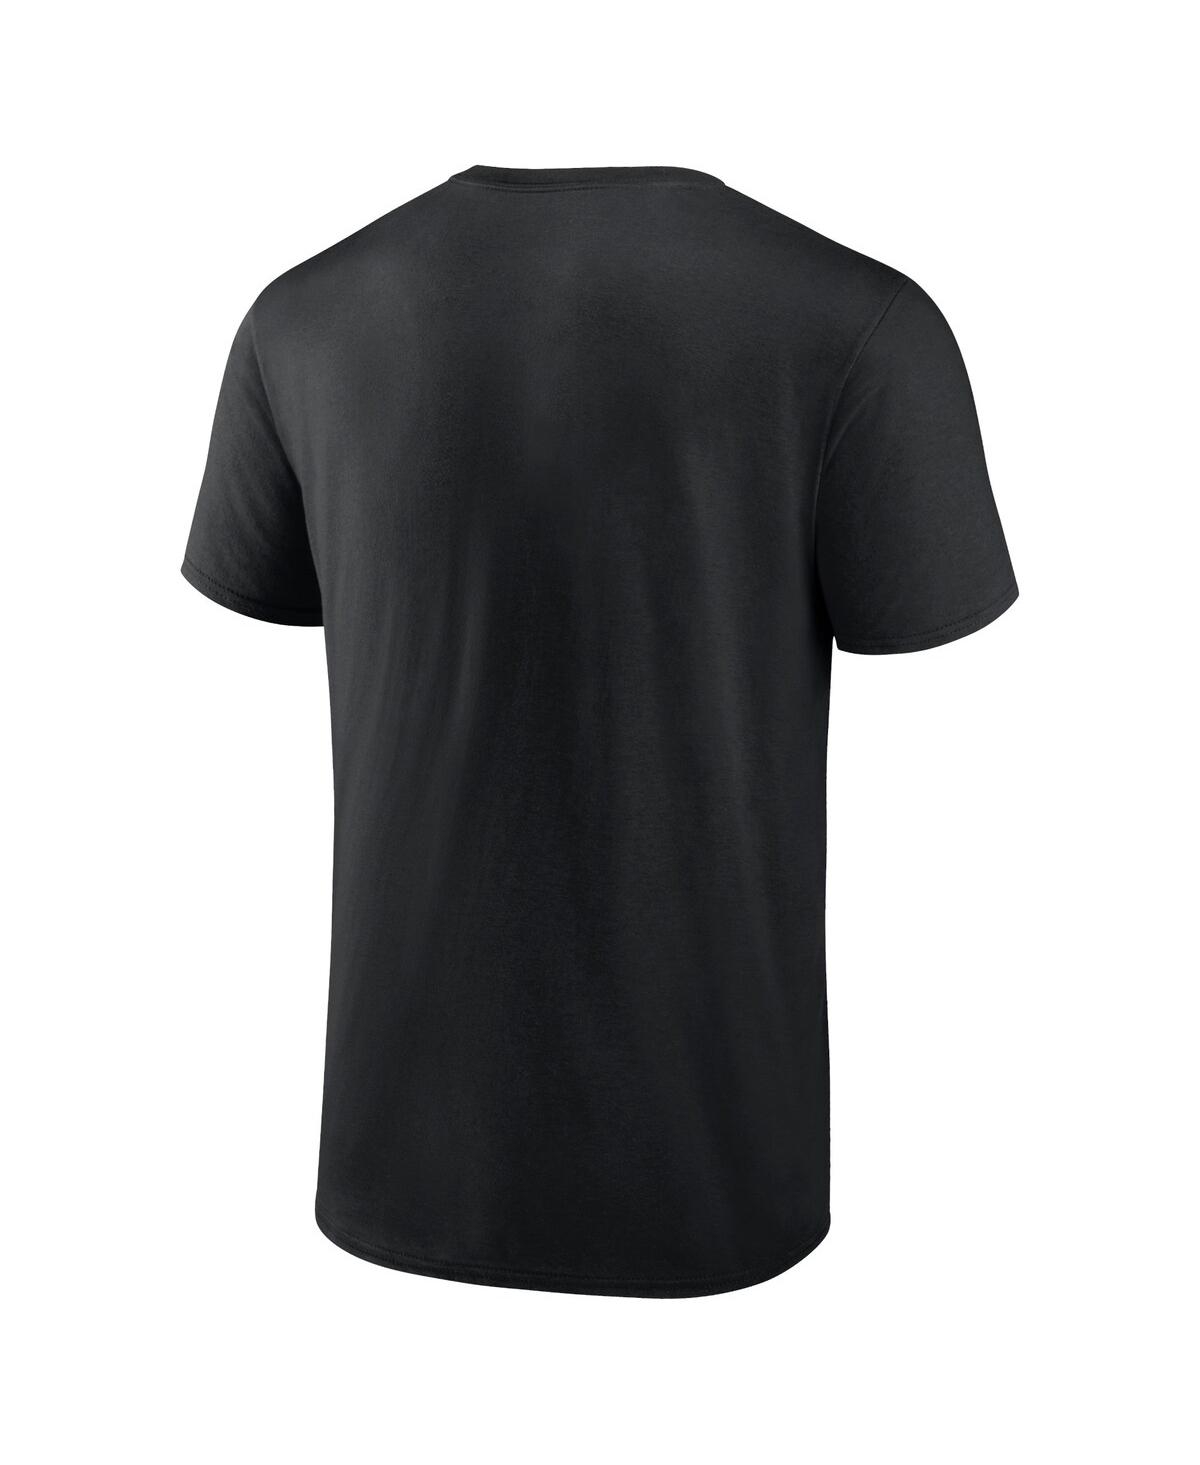 Shop Fanatics Men's Black Lafc Block T-shirt